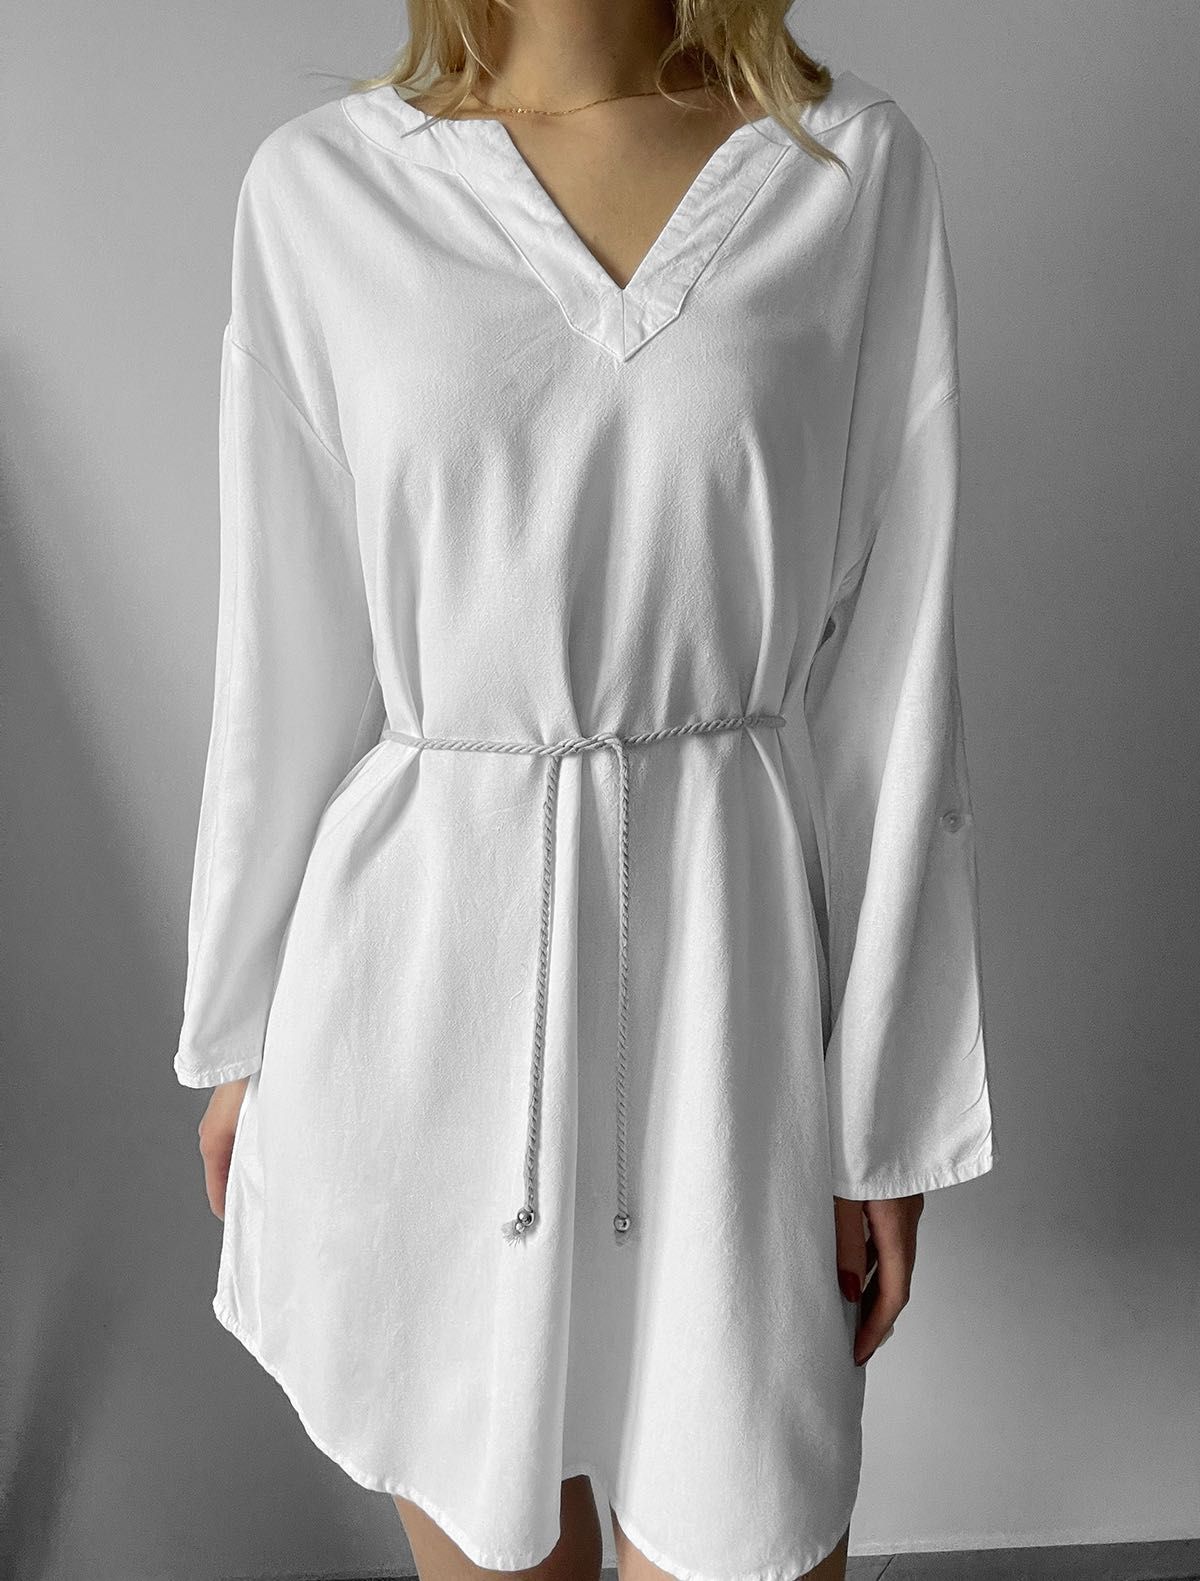 Biała sukienka mini krótka len wiskoza lniana jakość premium wiosna